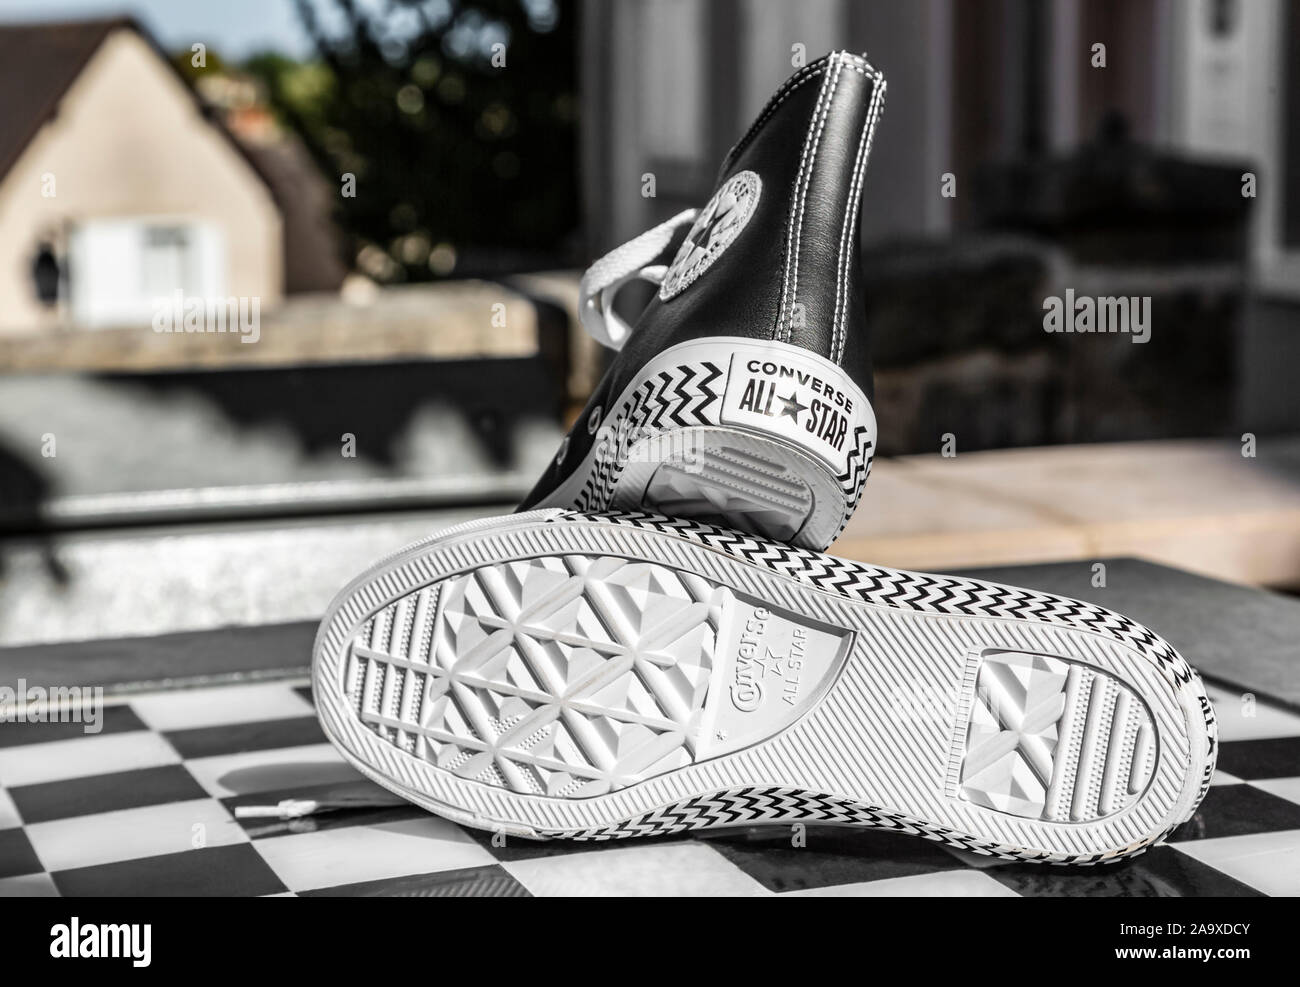 Chartres, Francia - Spetember 2, 2019: la imagen de un par de zapatillas  Converse All Star urbanas en una tabla de ajedrez en blanco y negro  Fotografía de stock - Alamy